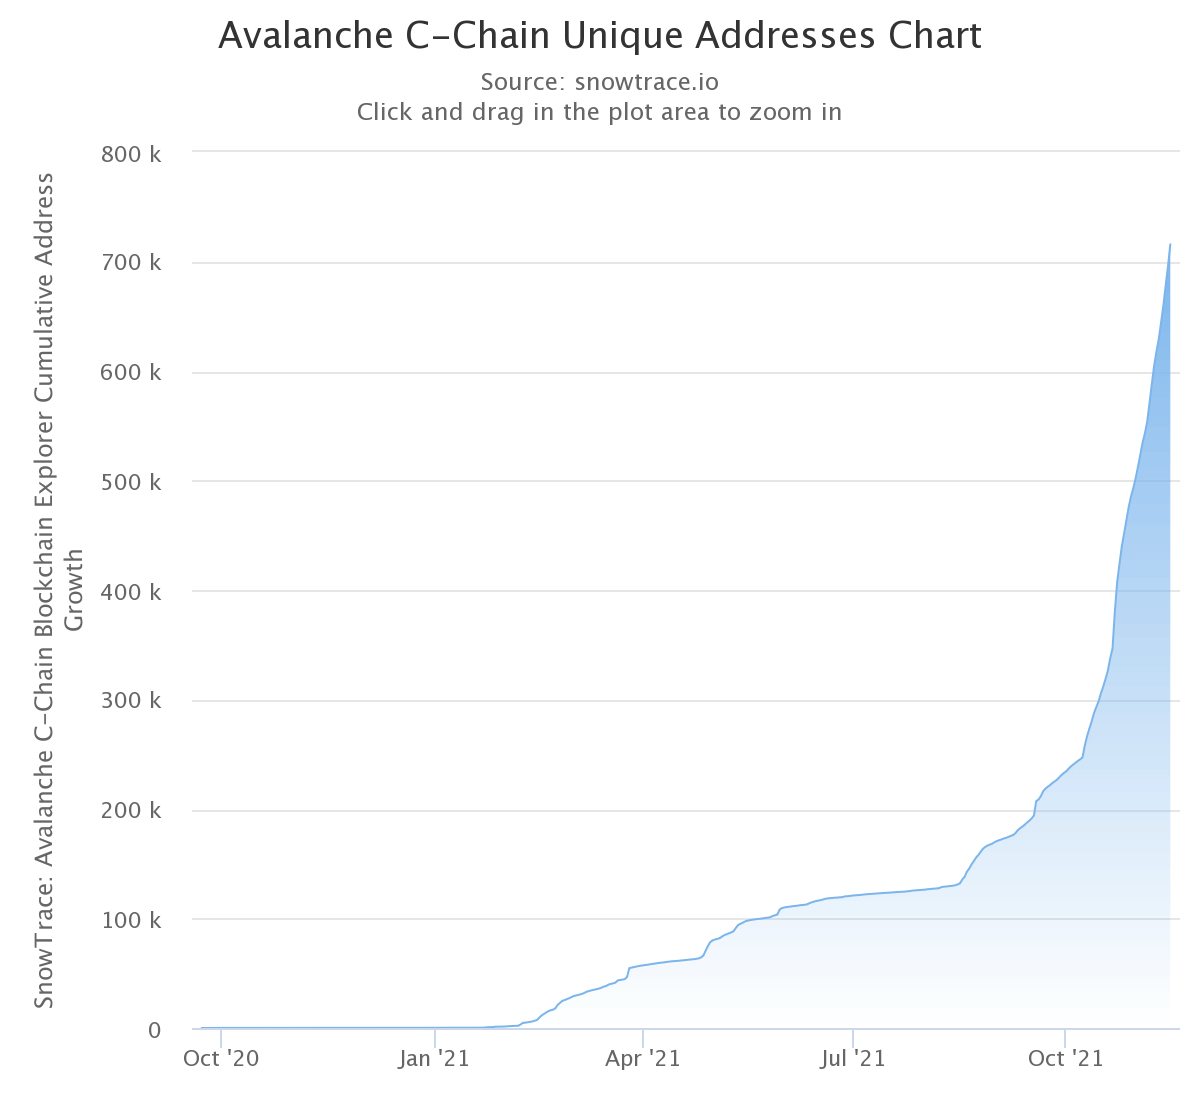 Graphique montrant le nombre d'adresses uniques sur la C-Chain d'Avalanche (Source : SnowTrace)